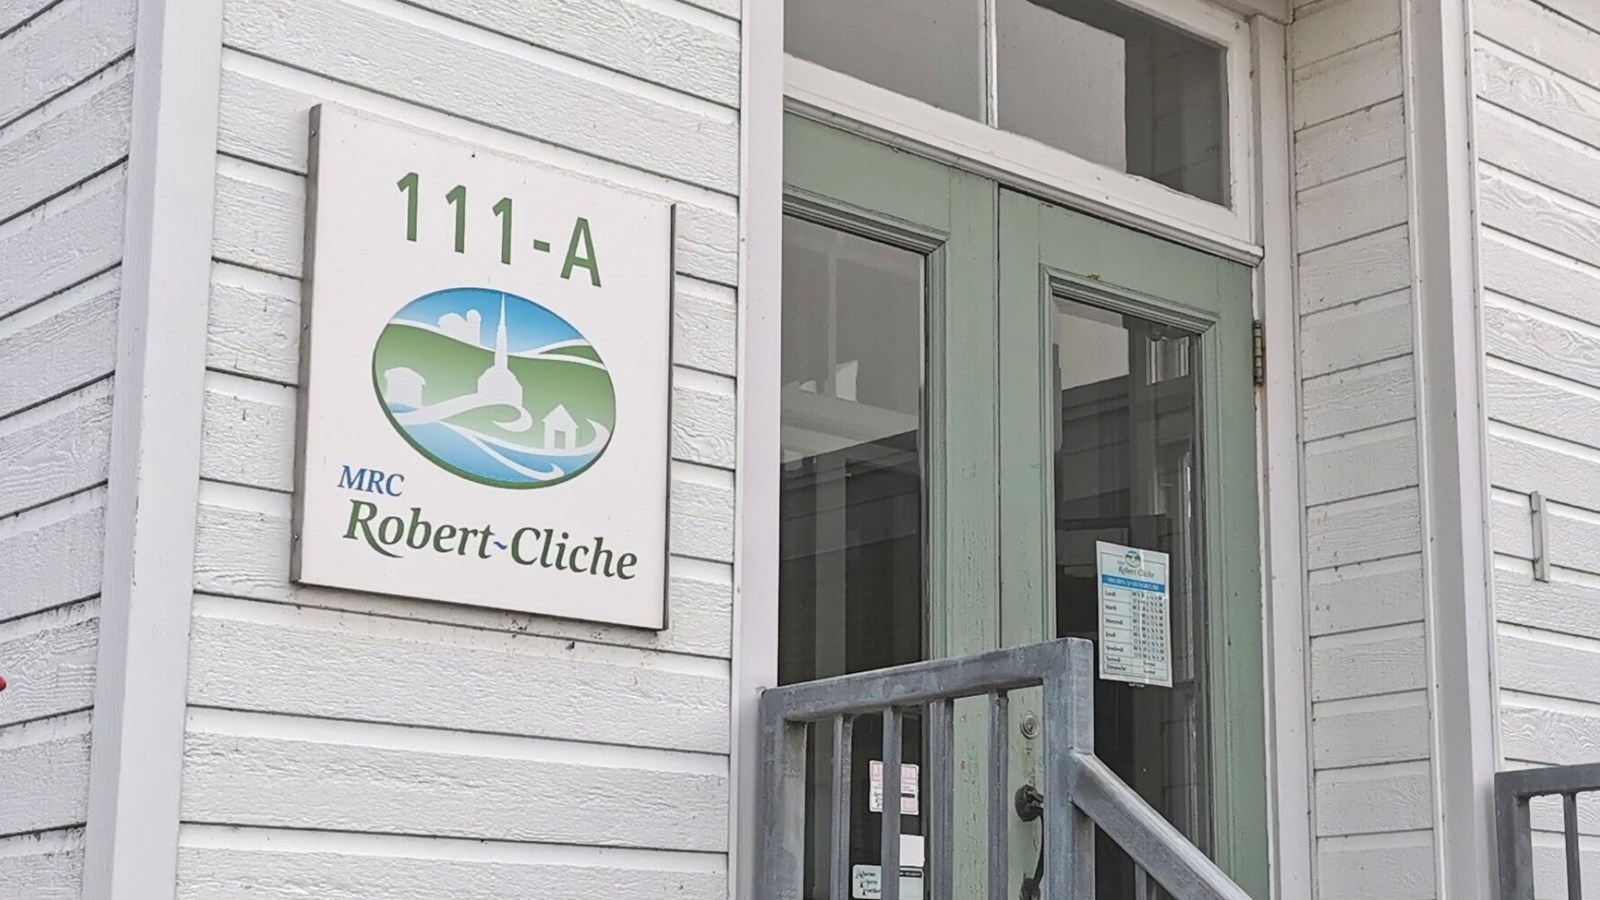 Une consultation publique pour changer le nom de la MRC Robert-Cliche